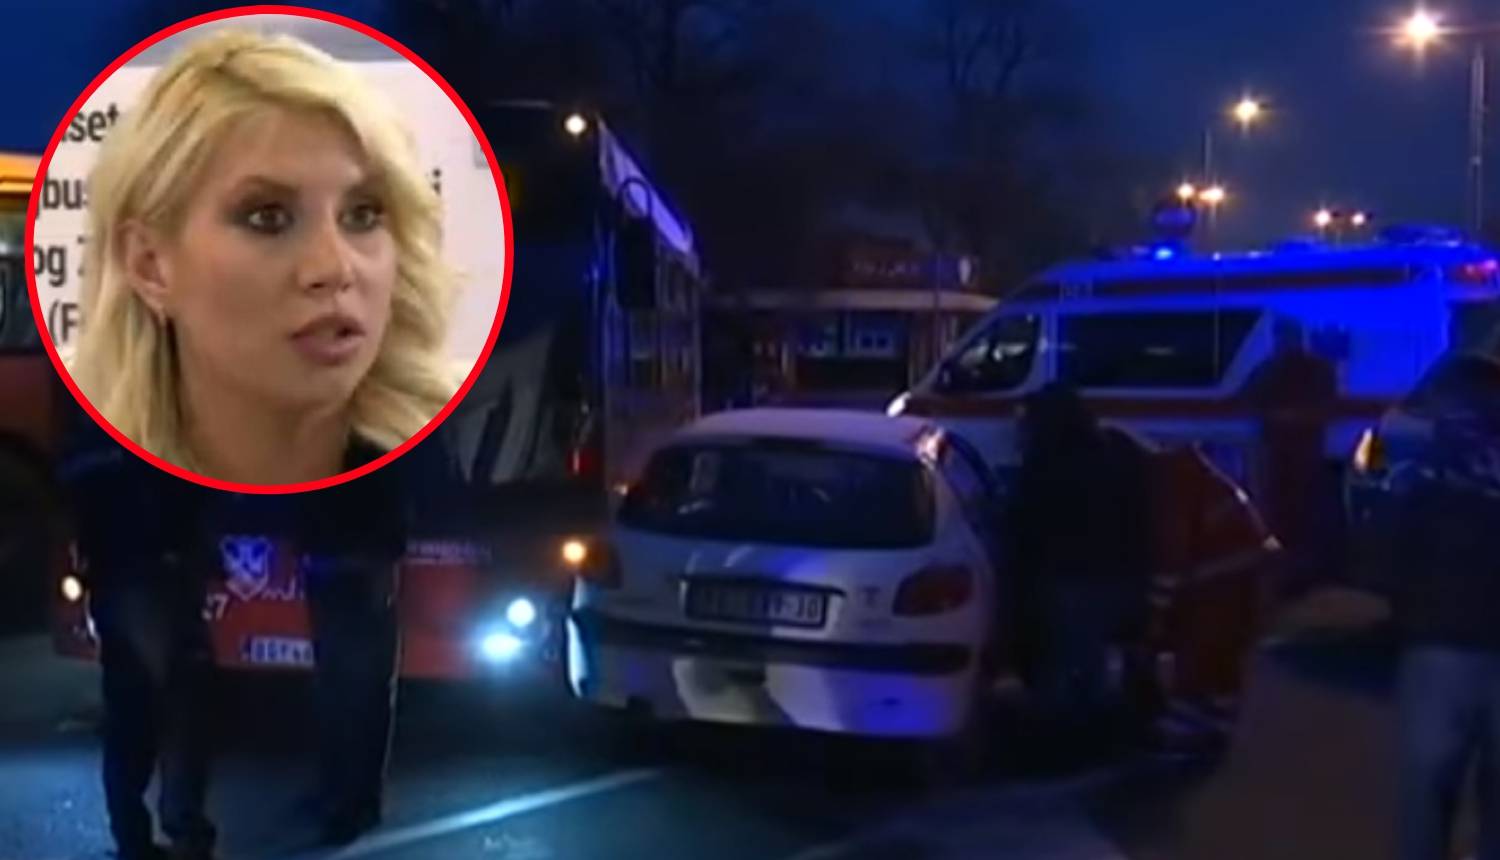 Užas u Beogradu: Bus naletio na voditeljicu, ostala bez ruke!